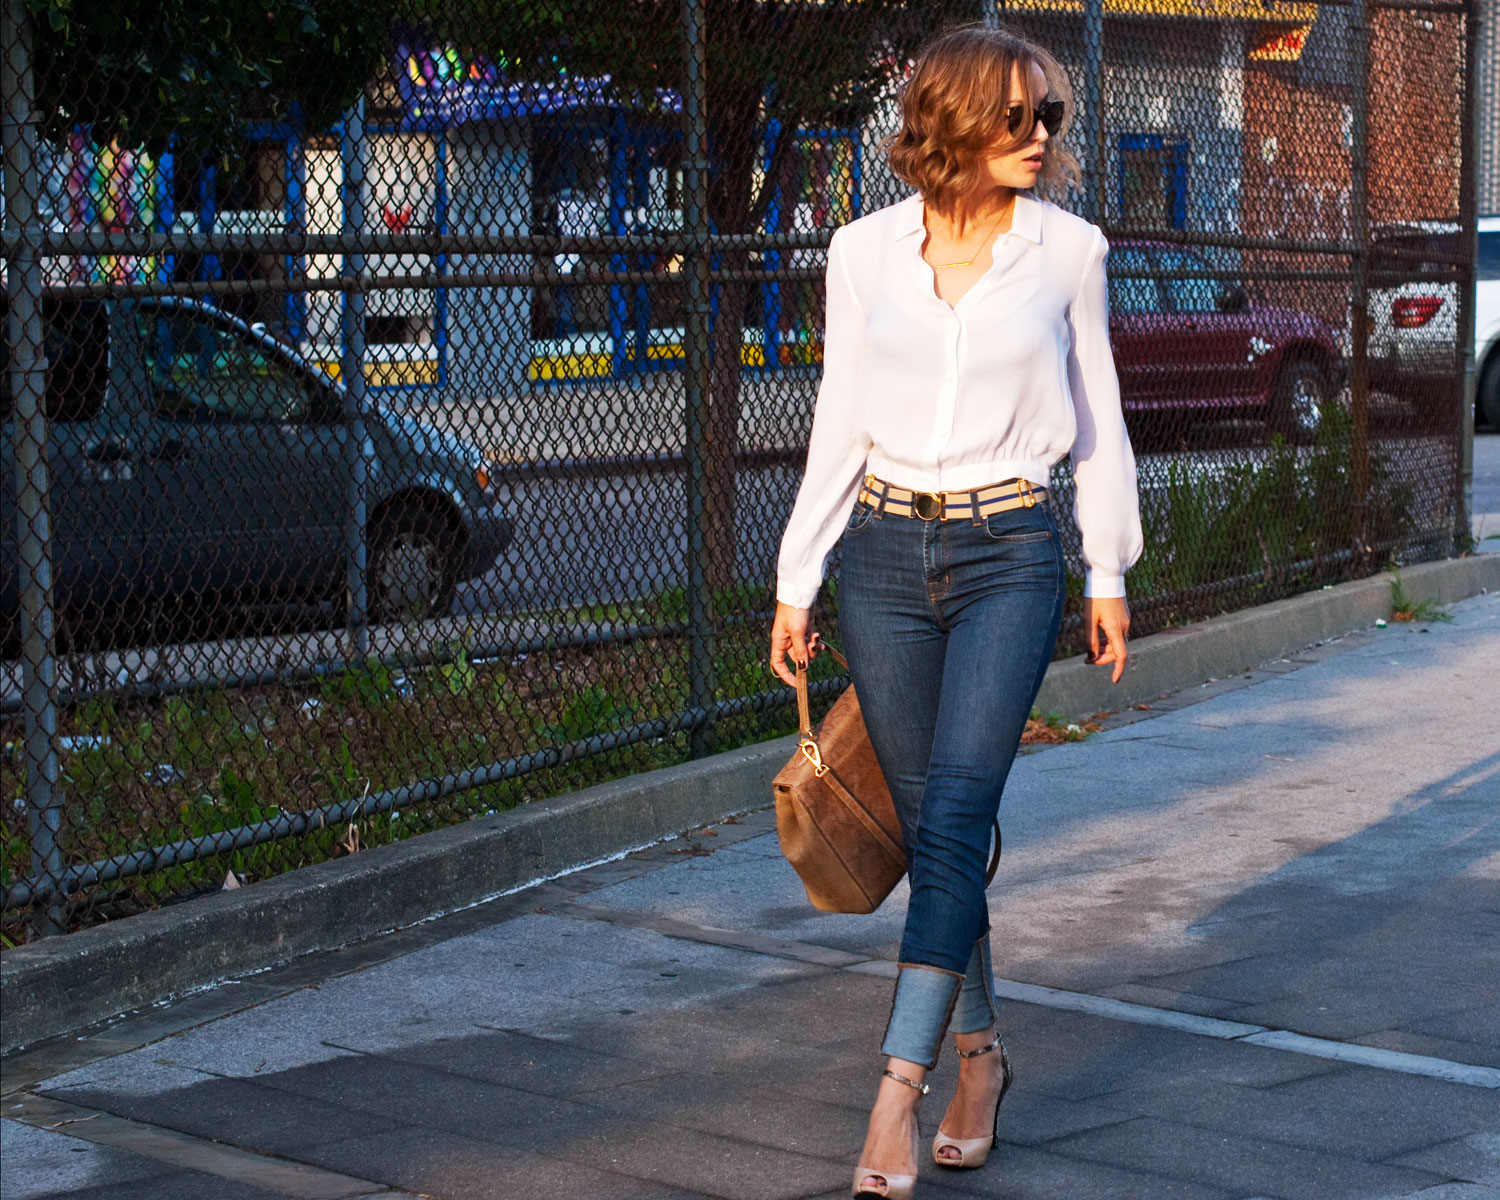 джинсы и белая рубашка женская фото